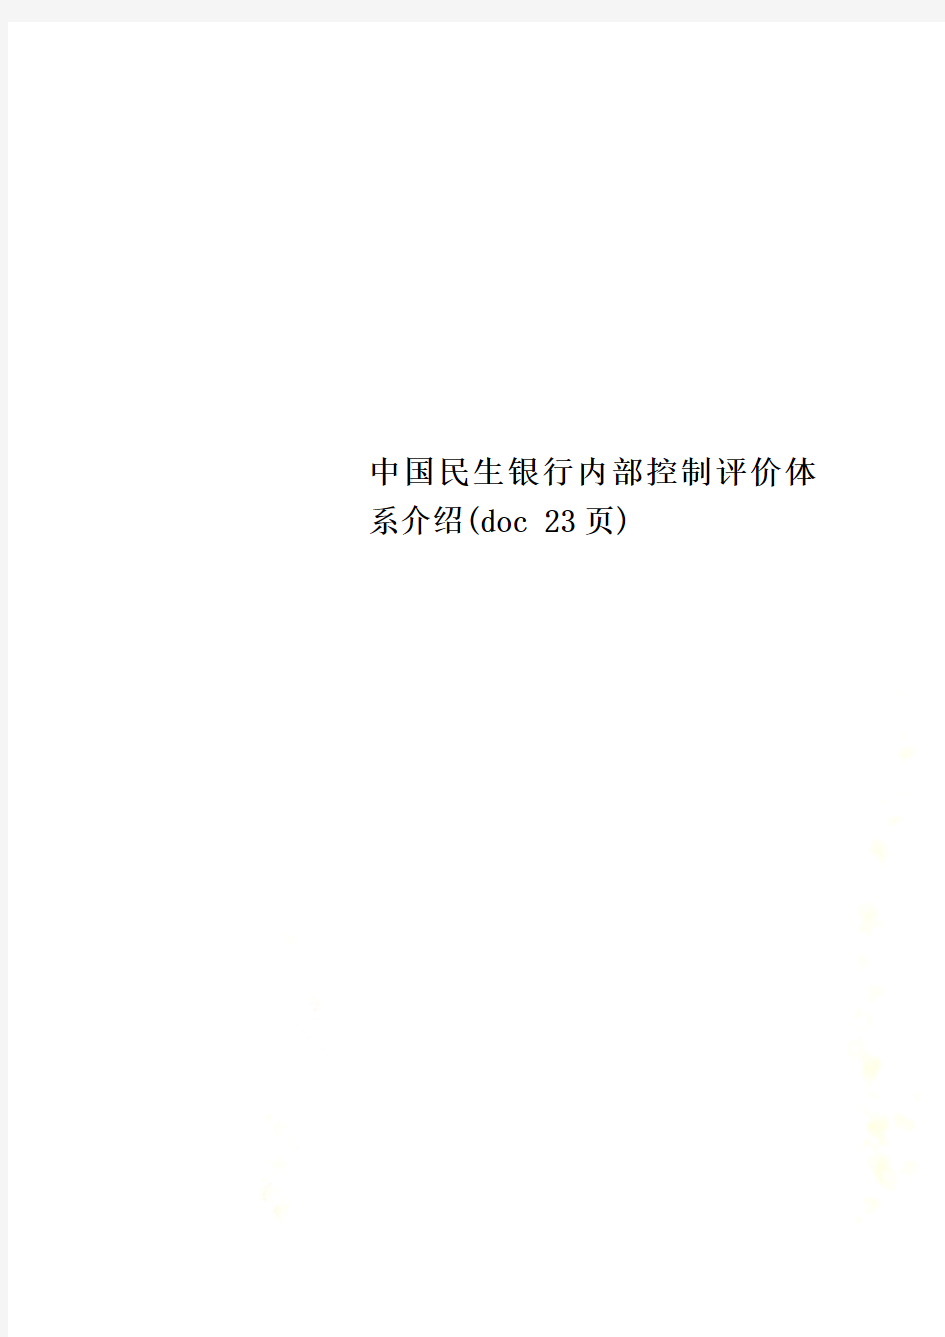 中国民生银行内部控制评价体系介绍(doc 23页)